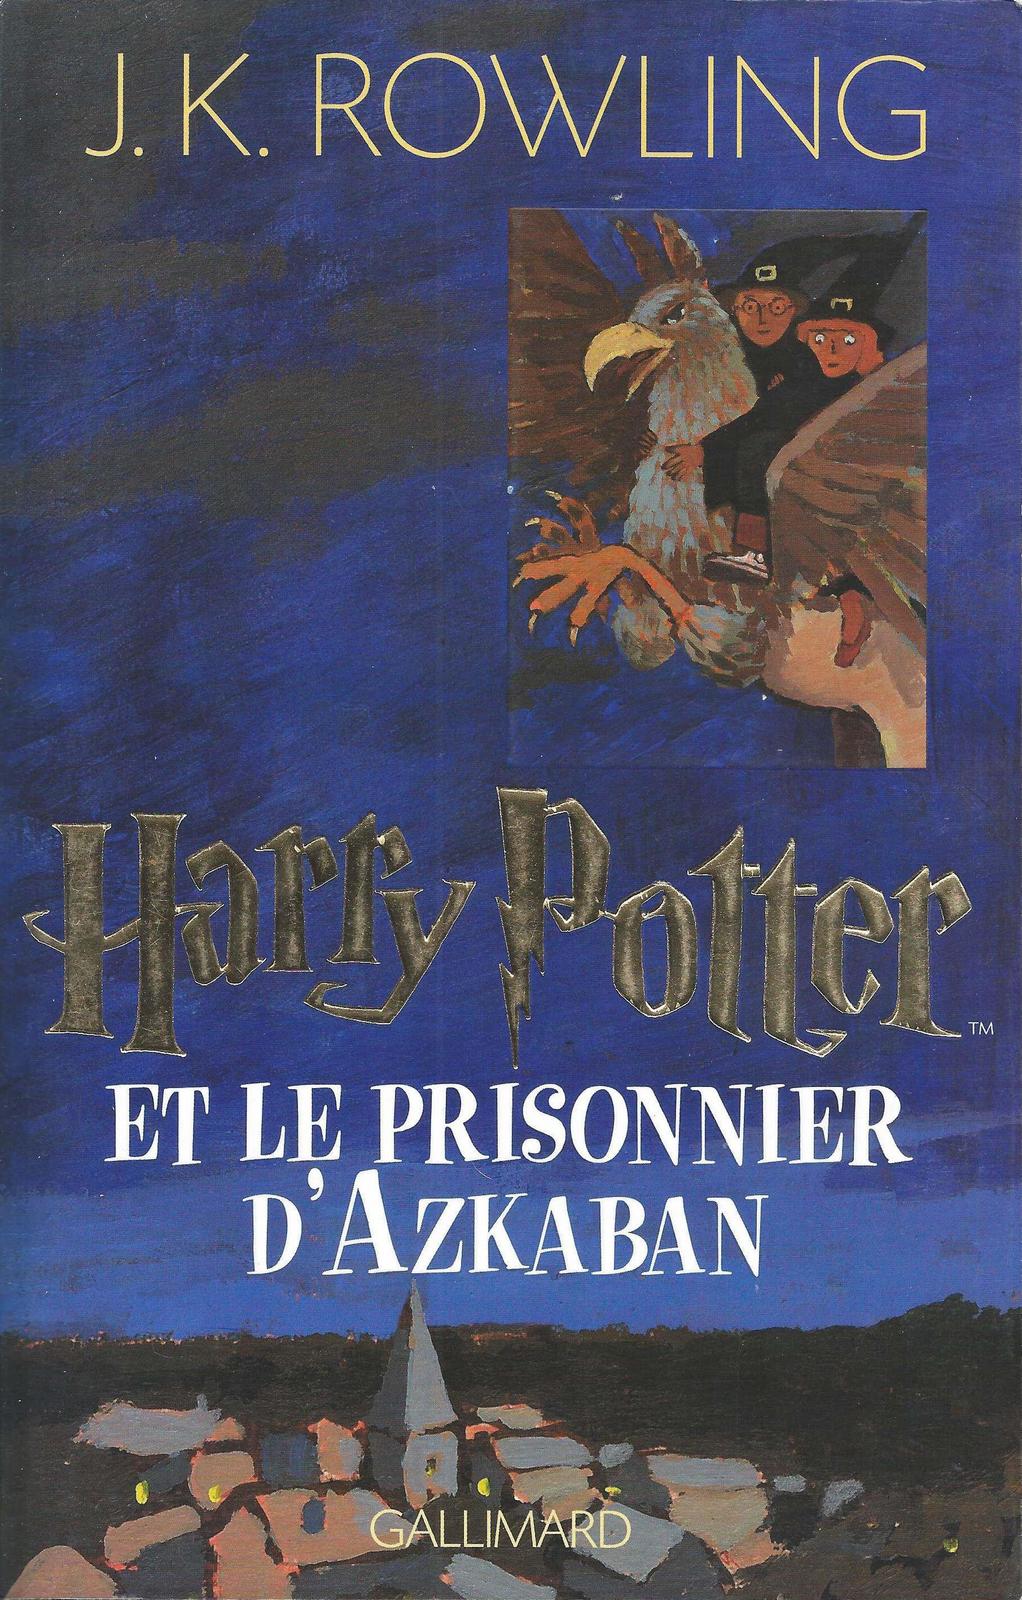 J. K. Rowling: Harry Potter et le prisonnier d'Azkaban (French language, 1999, Éditions Gallimard)